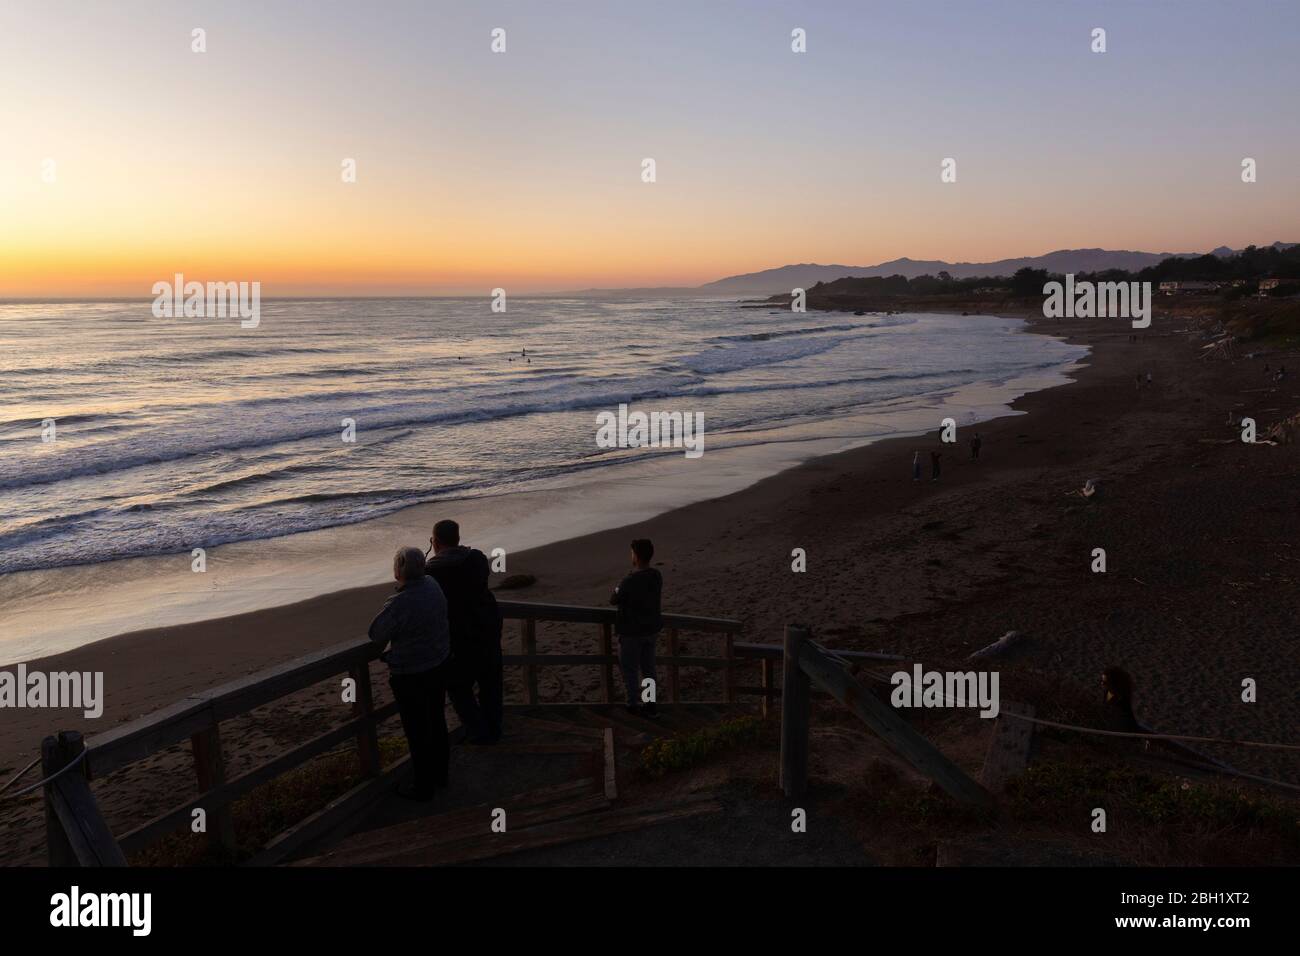 CAMBRIA, ÉTATS-UNIS - 21 SEPTEMBRE 2019 : coucher de soleil à Moonstone Beach sur la côte californienne avec des gens qui regardent les surfeurs du soir. Banque D'Images